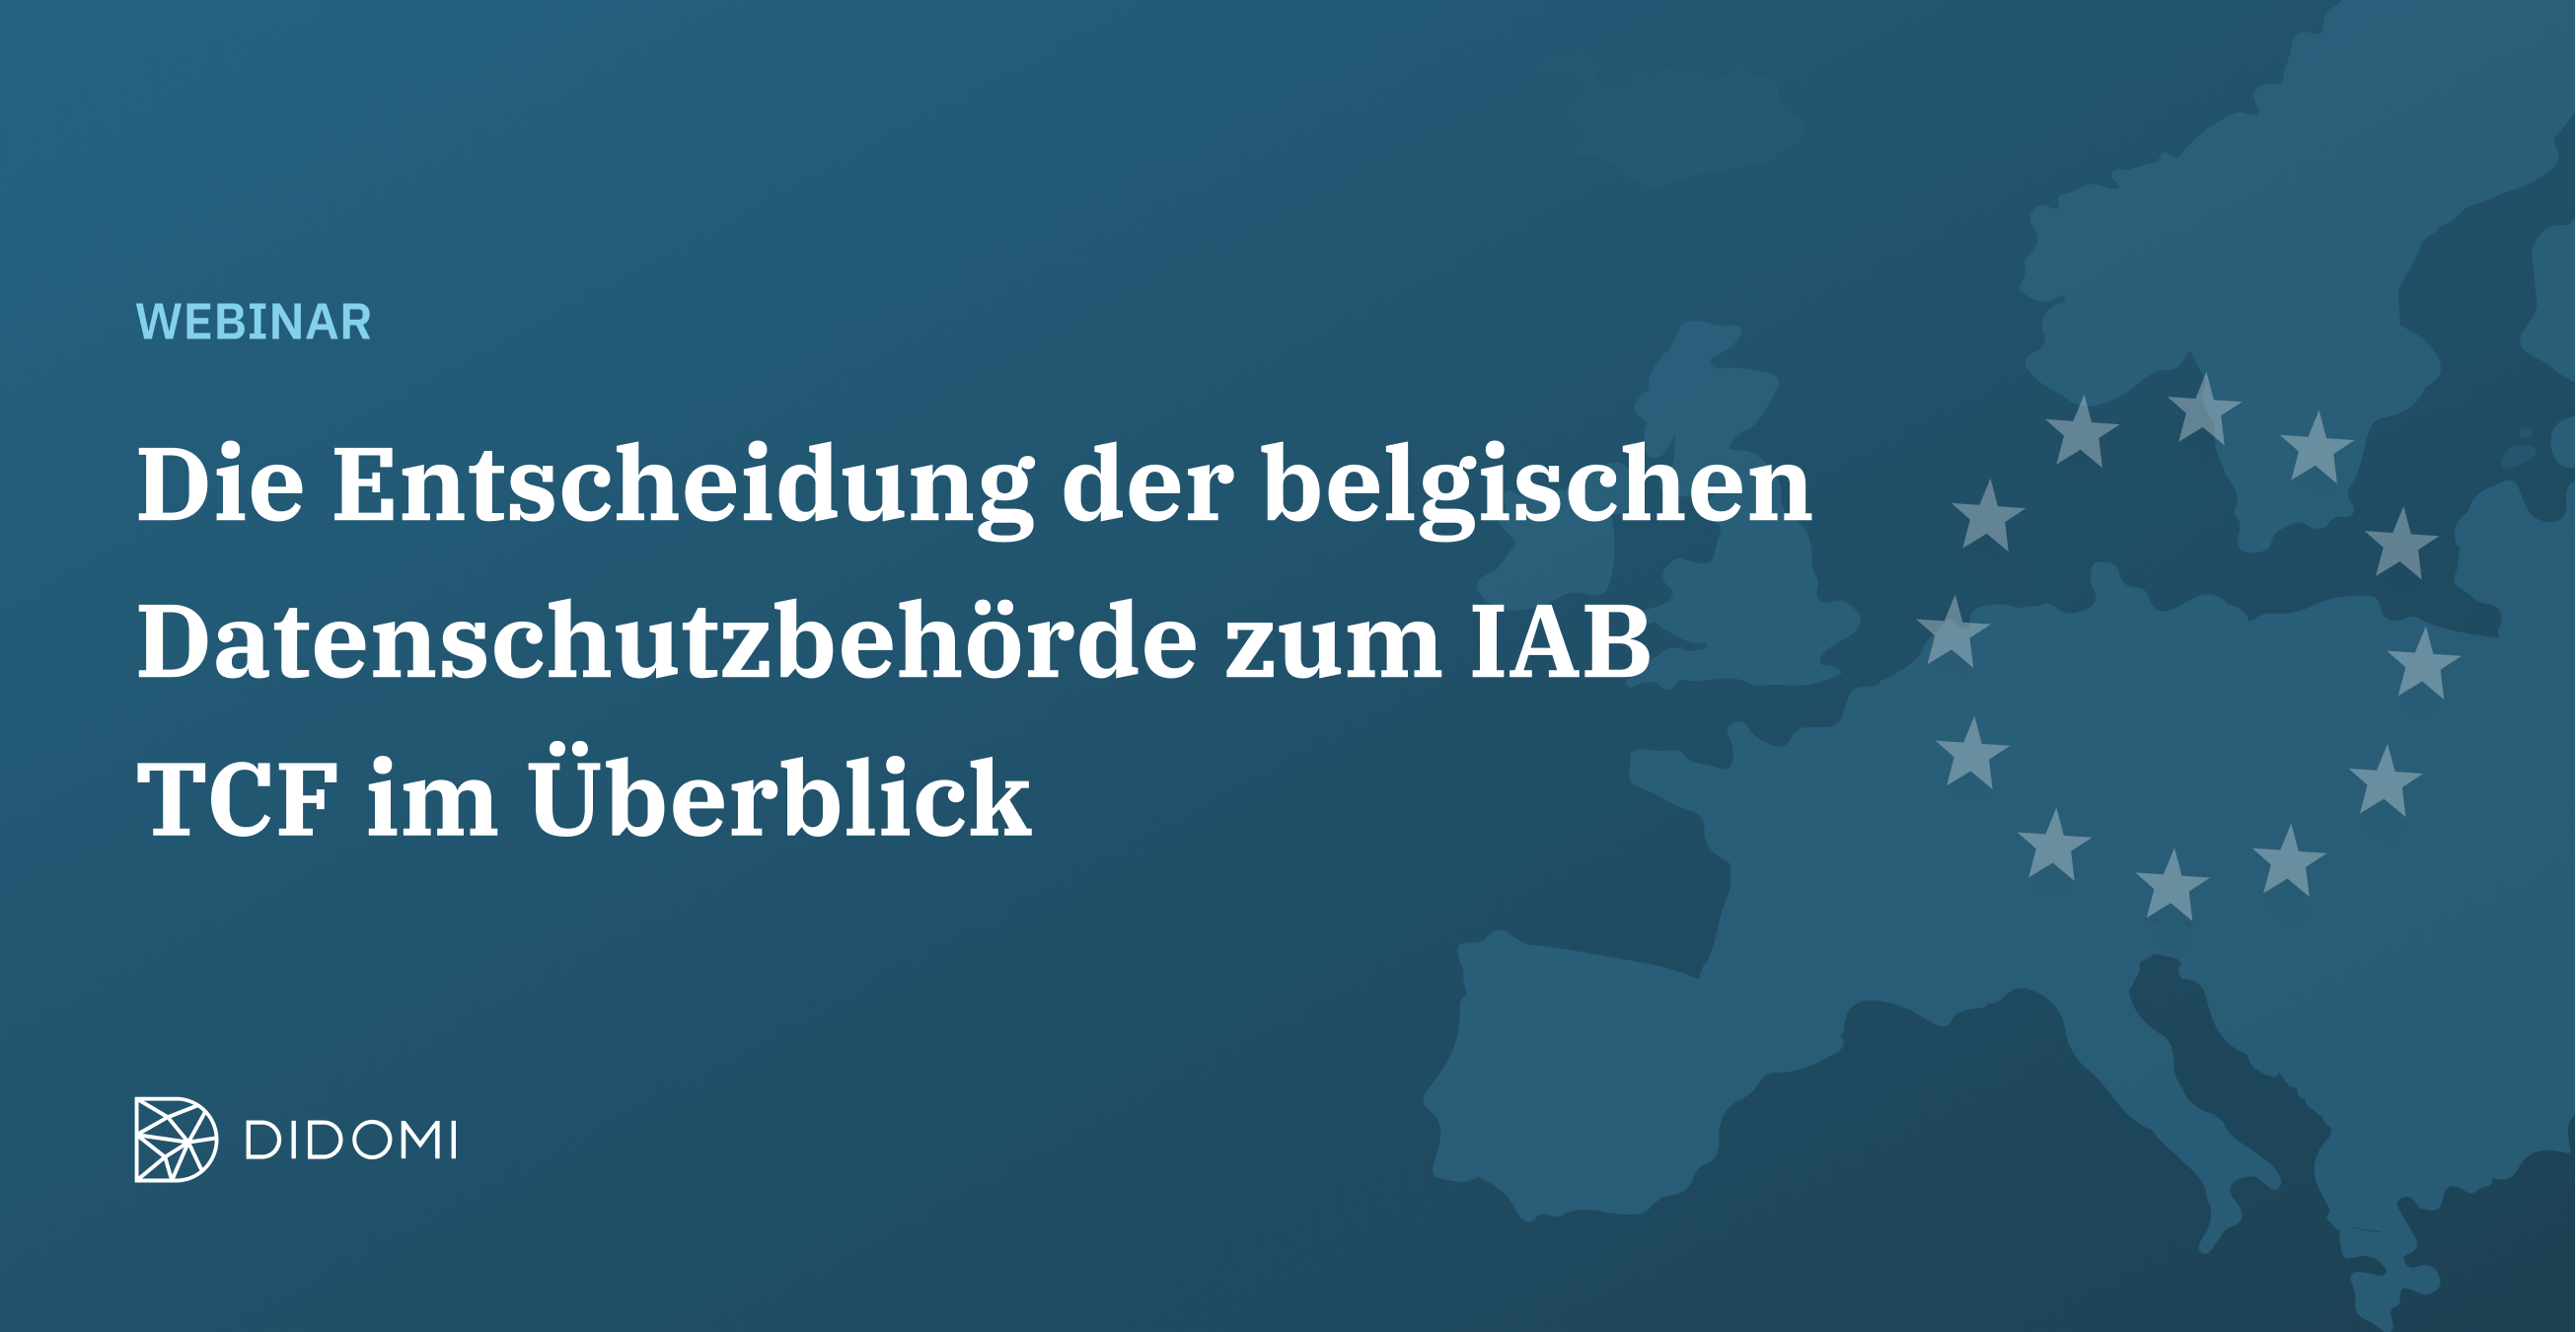 Die Entscheidung der belgischen Datenschutzbehörde zum IAB TCF im Überblick